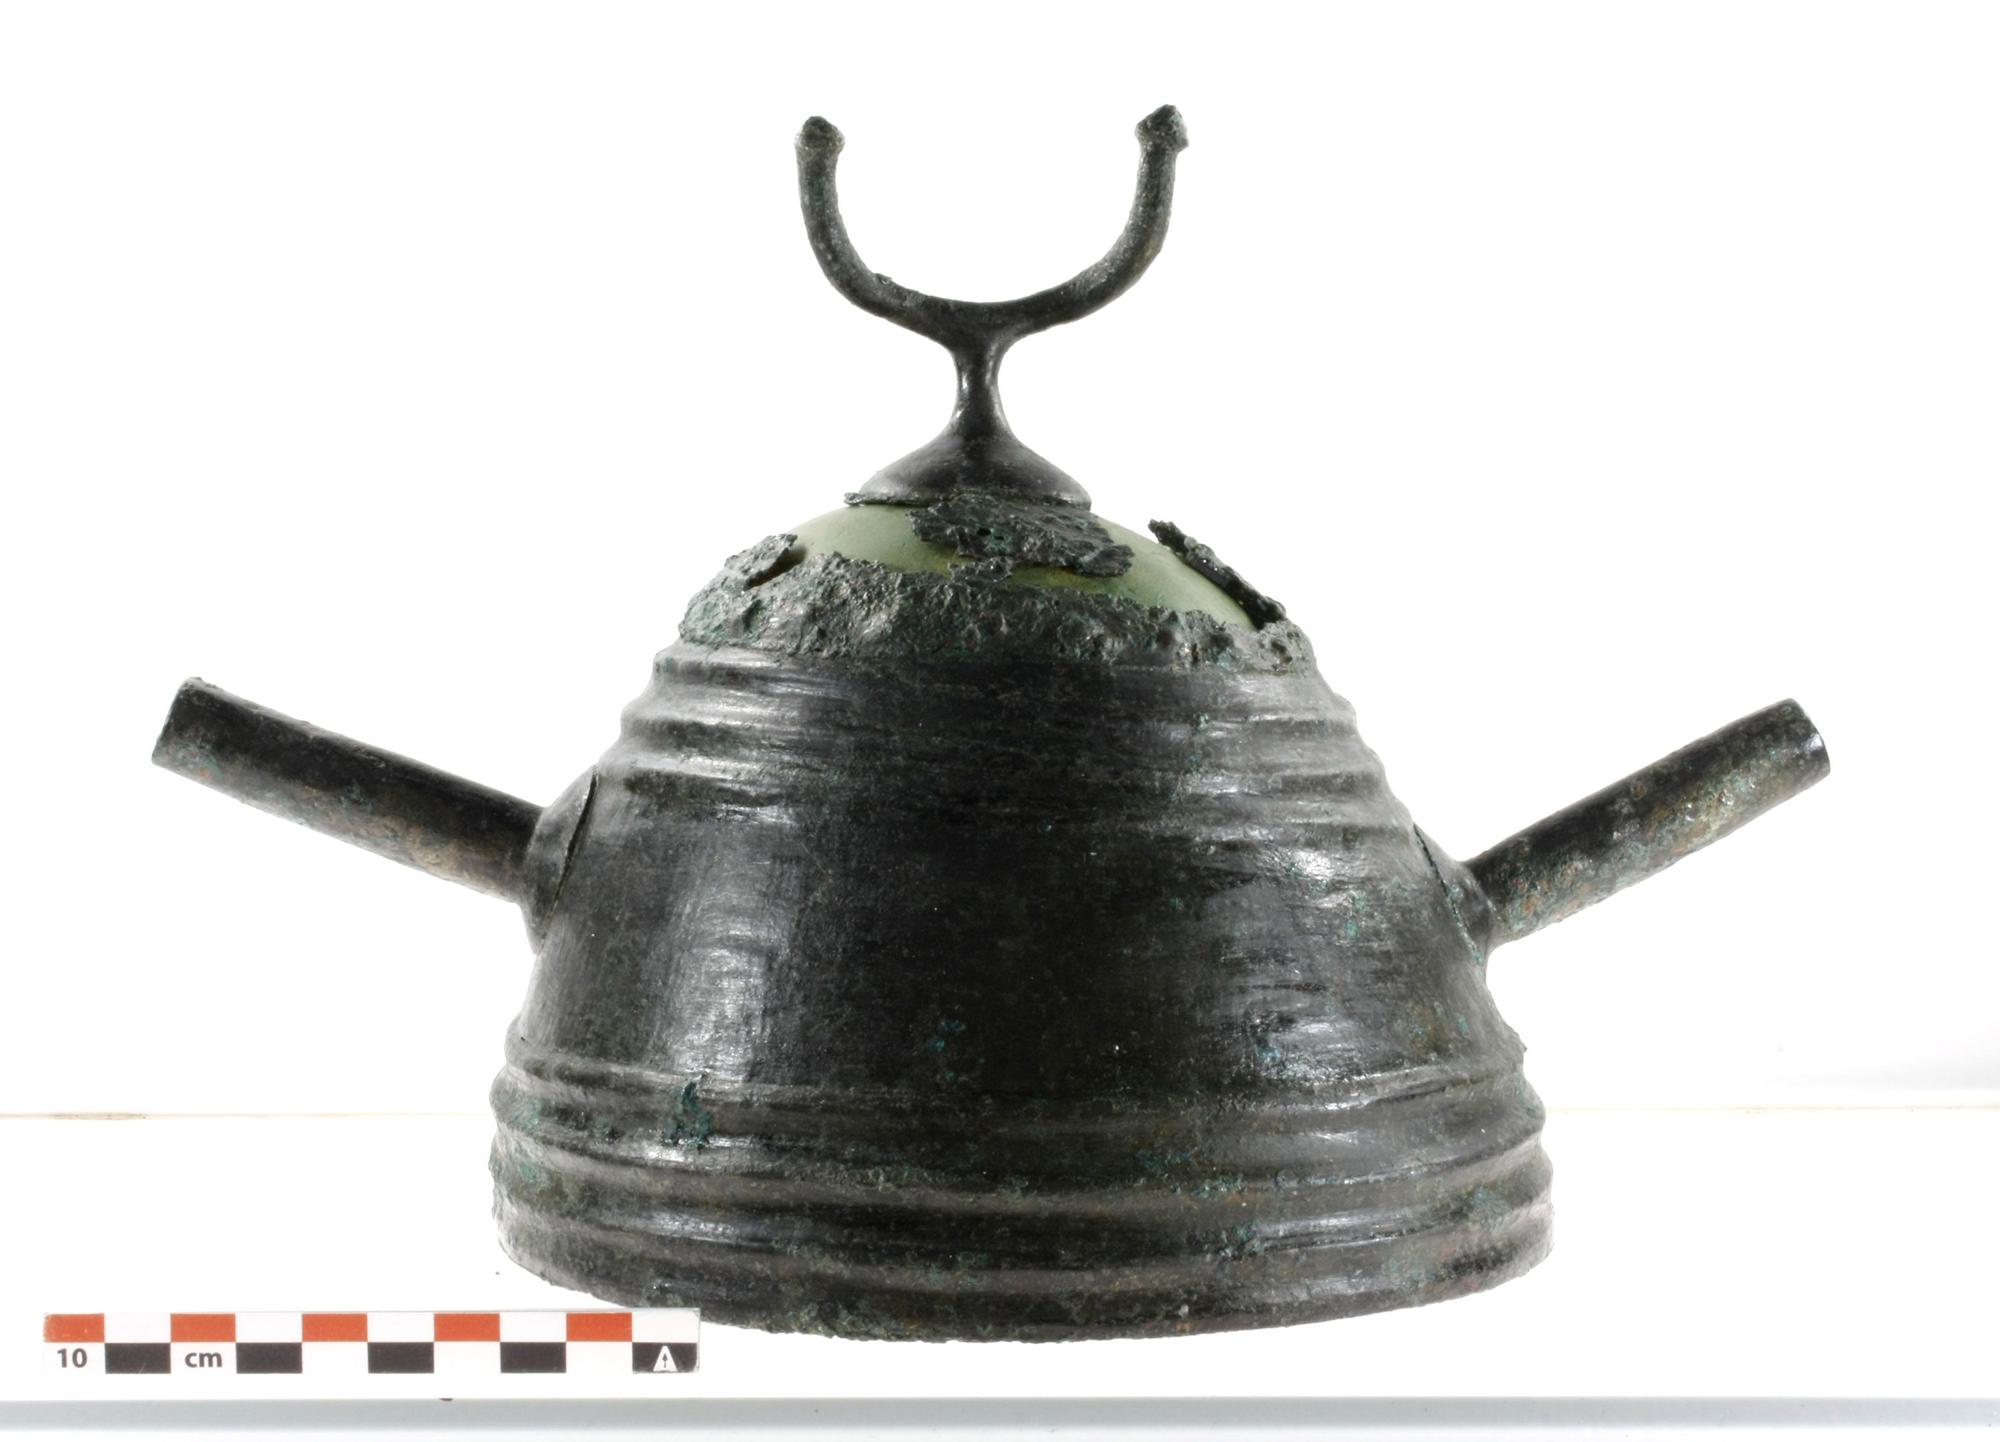 Aparece un "tesoro" arqueológico en Ribadesella: dos cascos de la Edad de Bronce